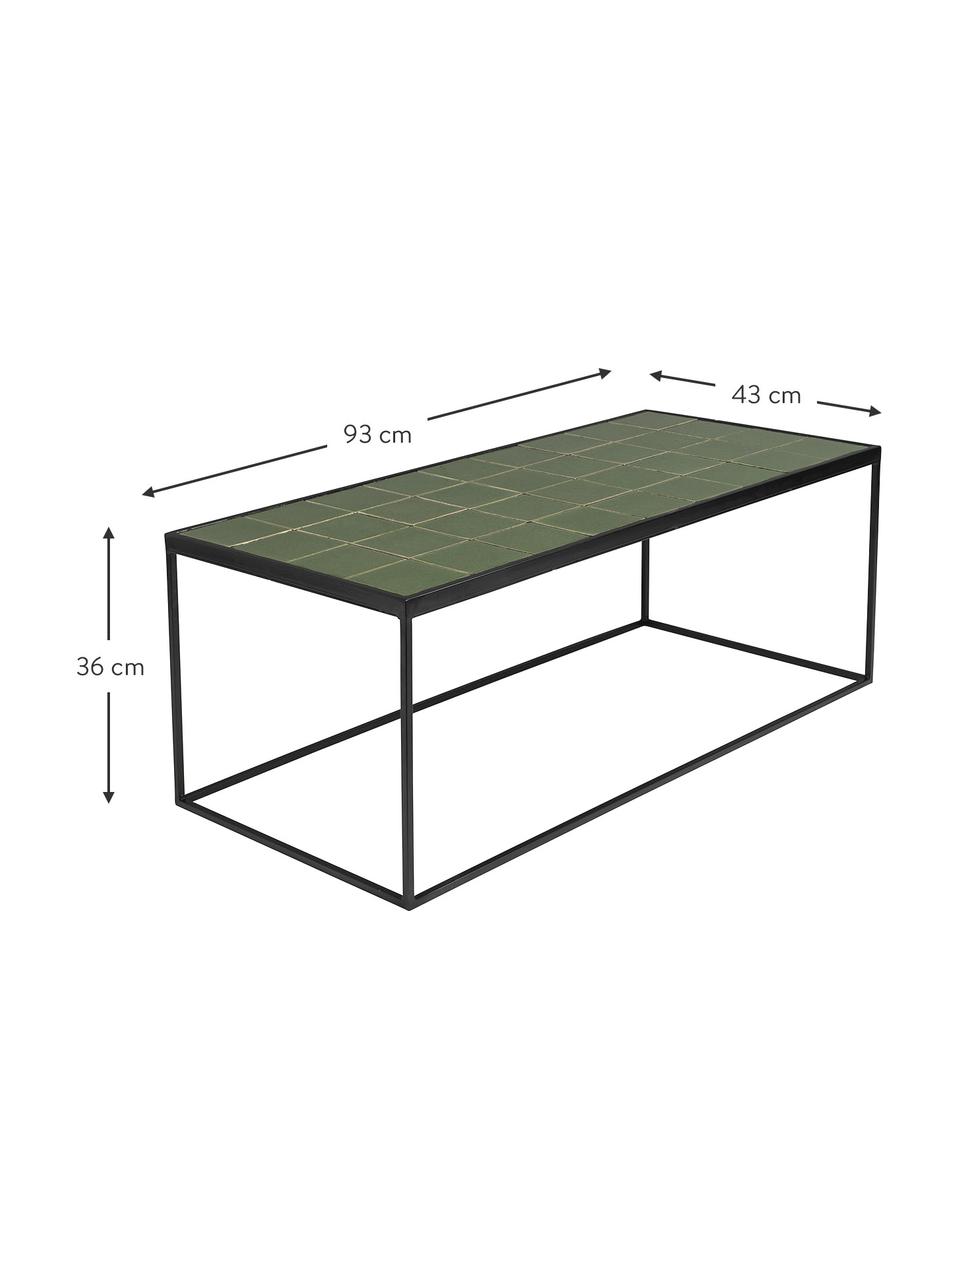 Konferenční stolek s kachličkami Glaze, Zelená, černá, Š 93 cm, V 36 cm